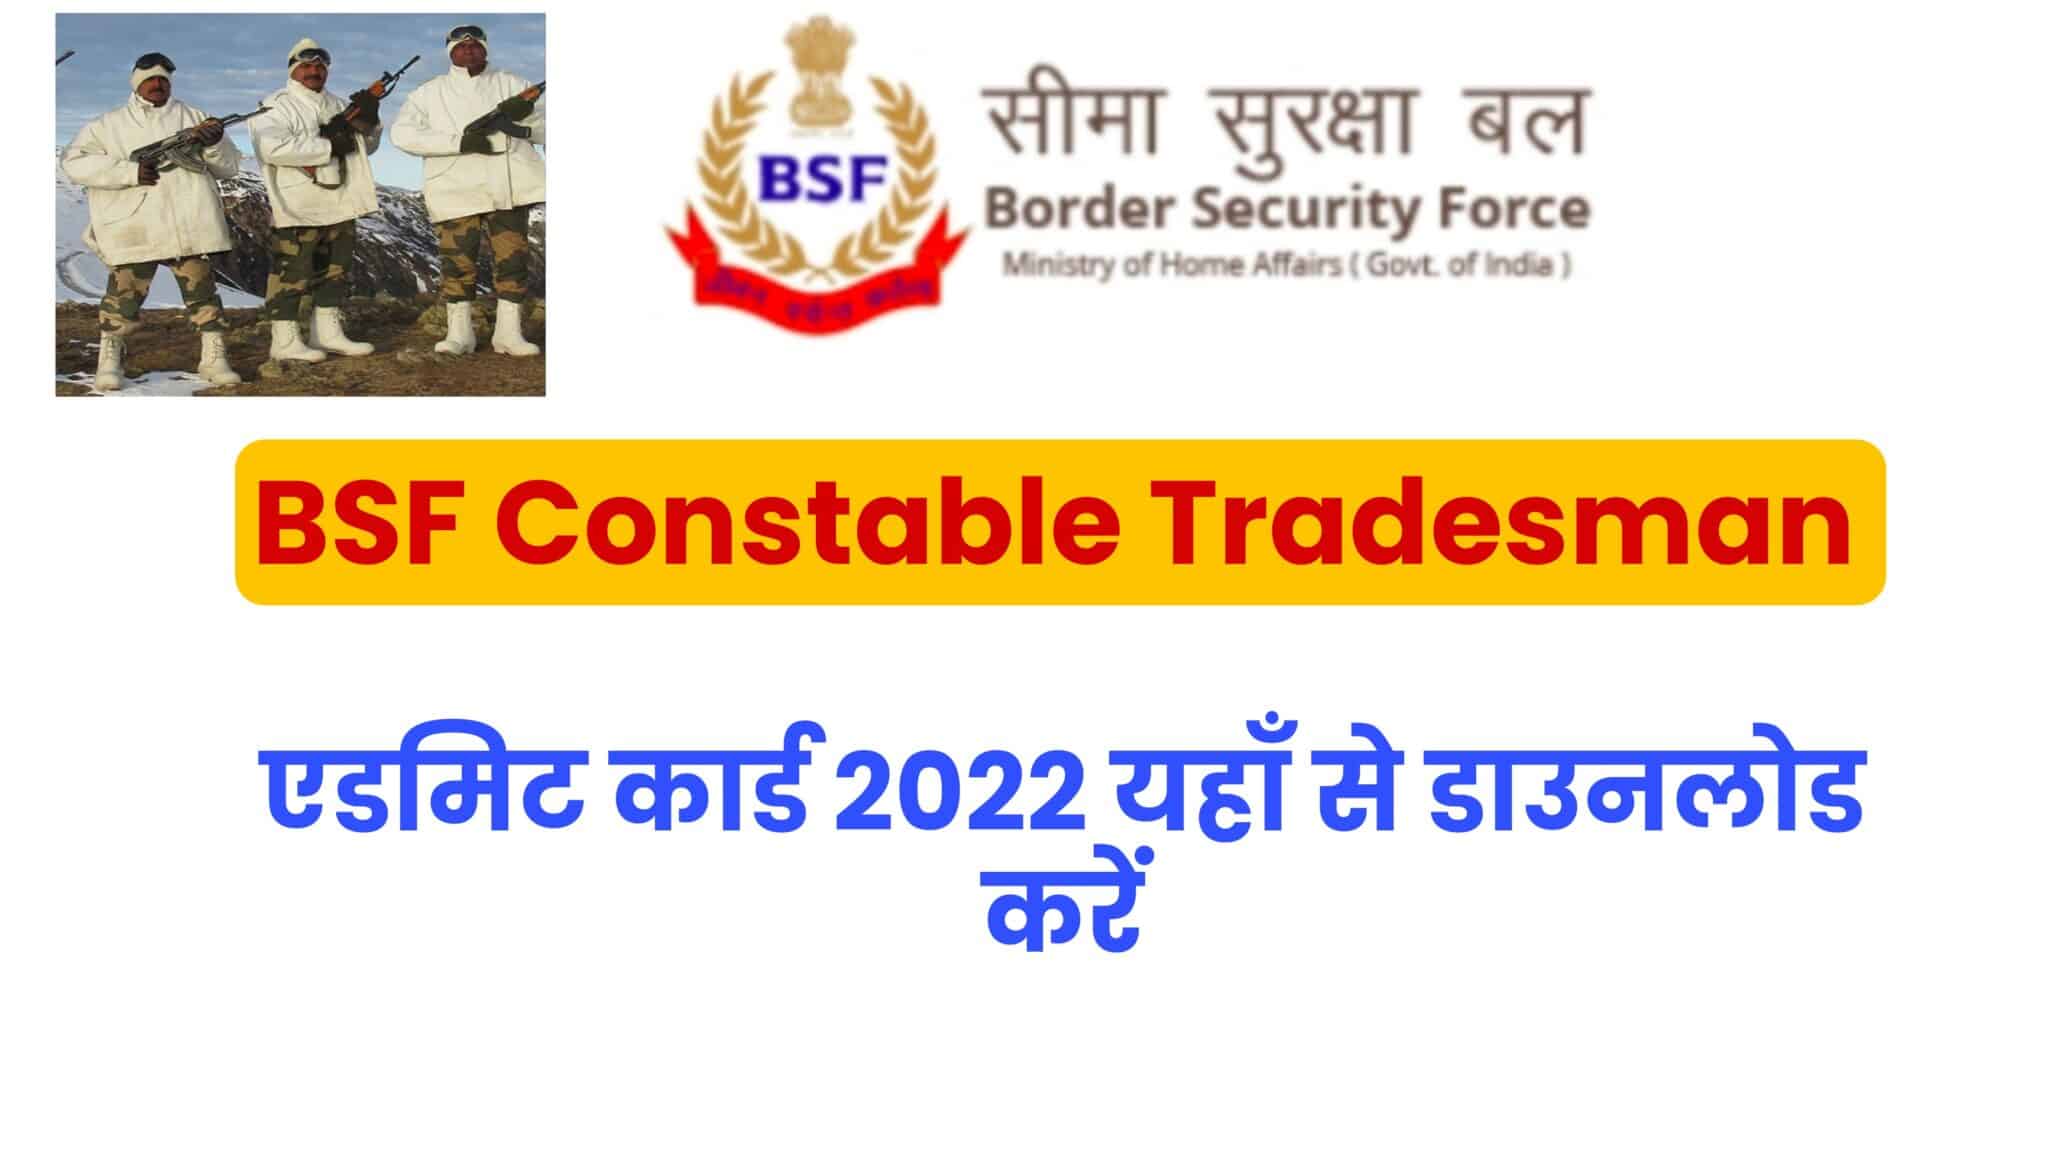 BSF Constable Tradesman Admit Card 2022 | सीमा सुरक्षा बल कांस्टेबल ट्रेडमैन एडमिट कार्ड